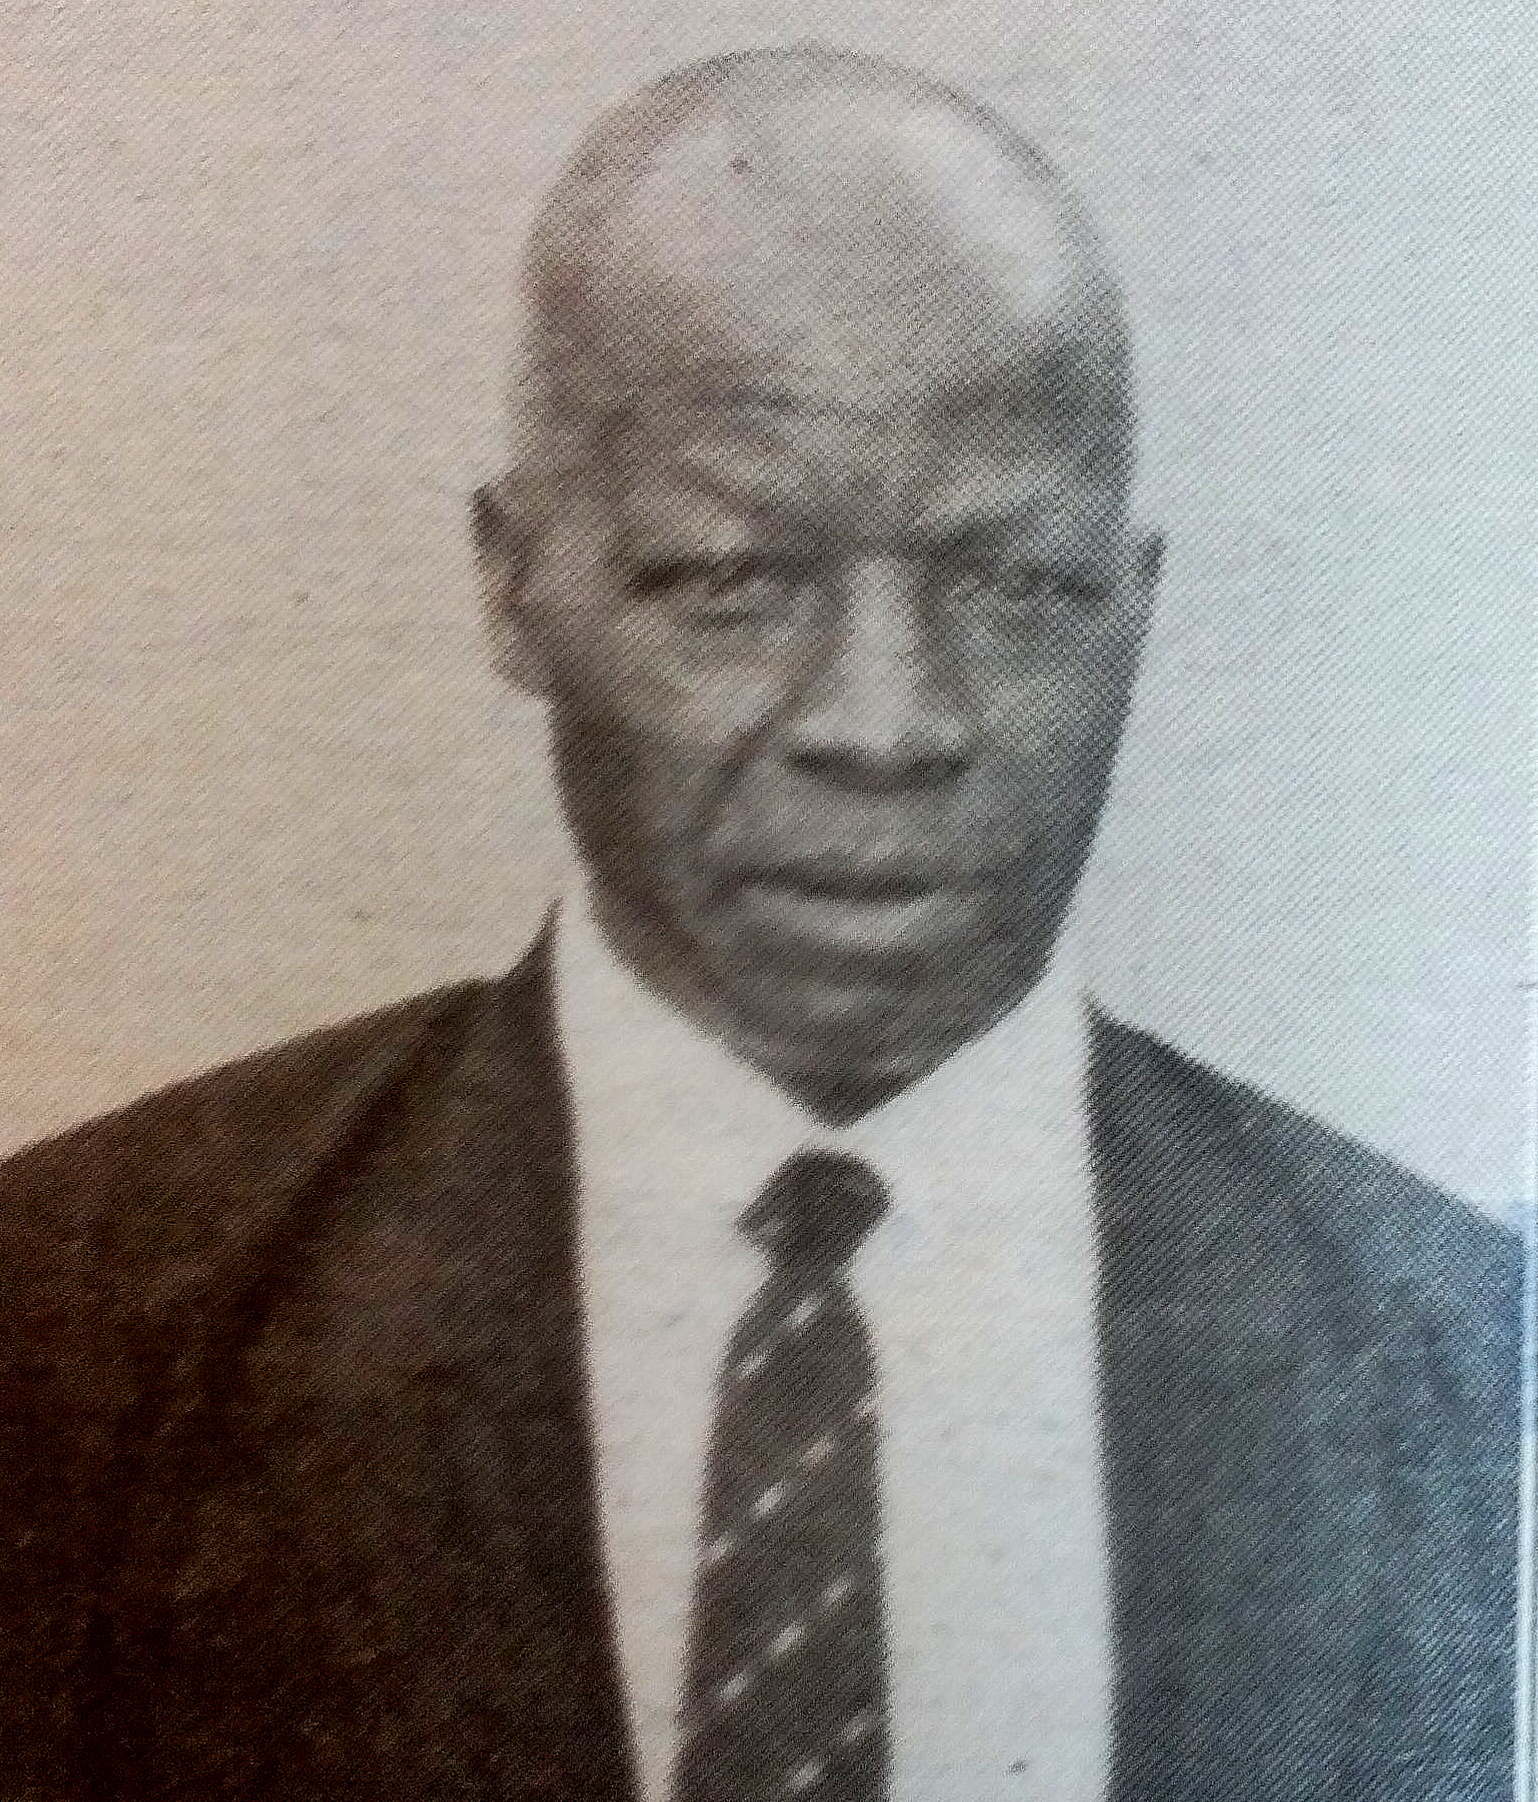 Obituary Image of James Mwangi Kiragu (Farmer)